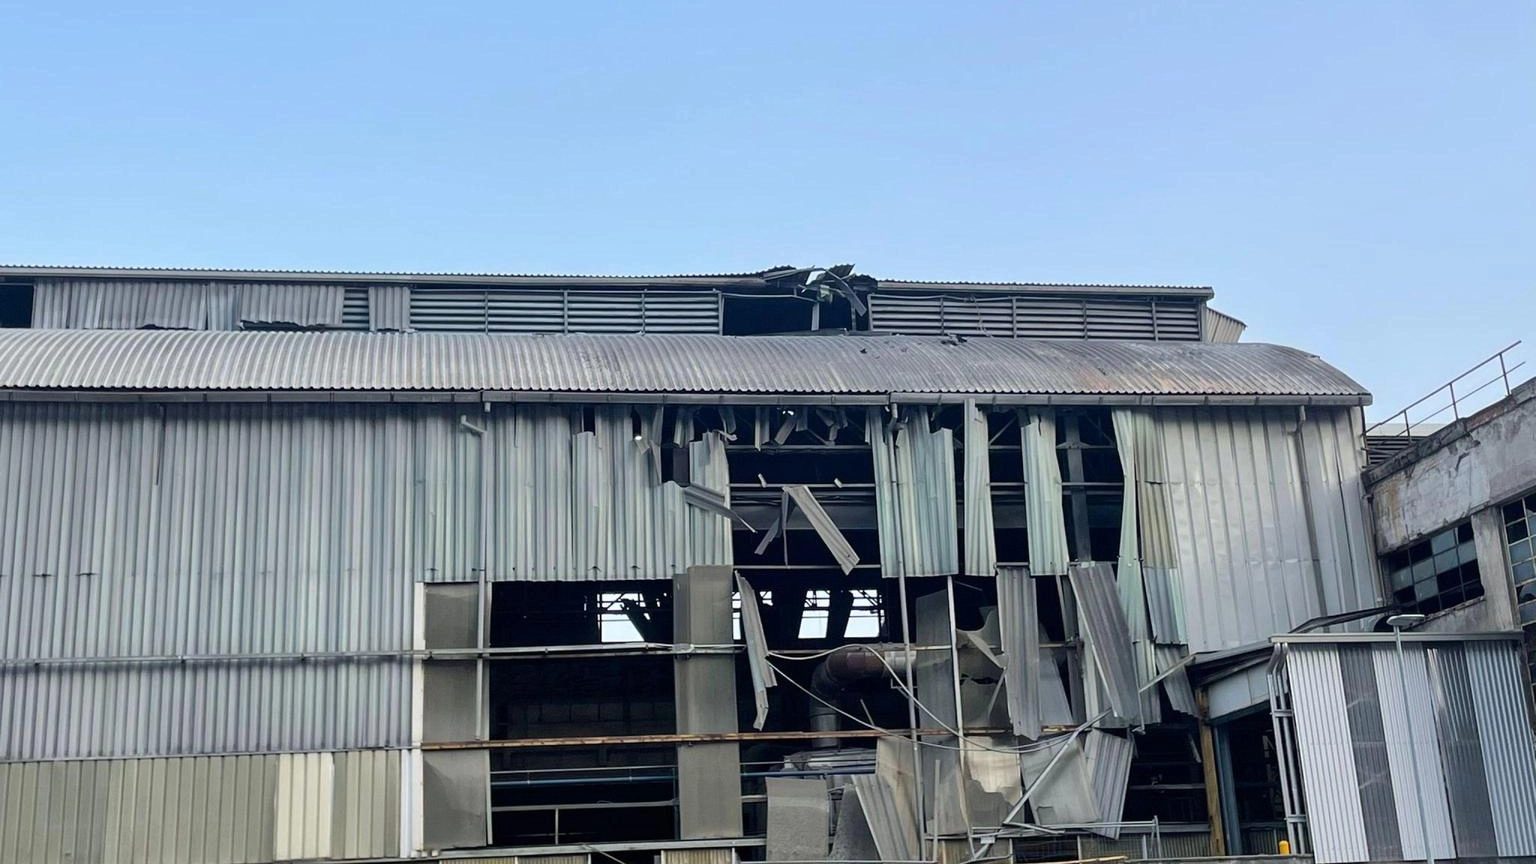 Esplosione in una fabbrica a Bolzano, 6 feriti